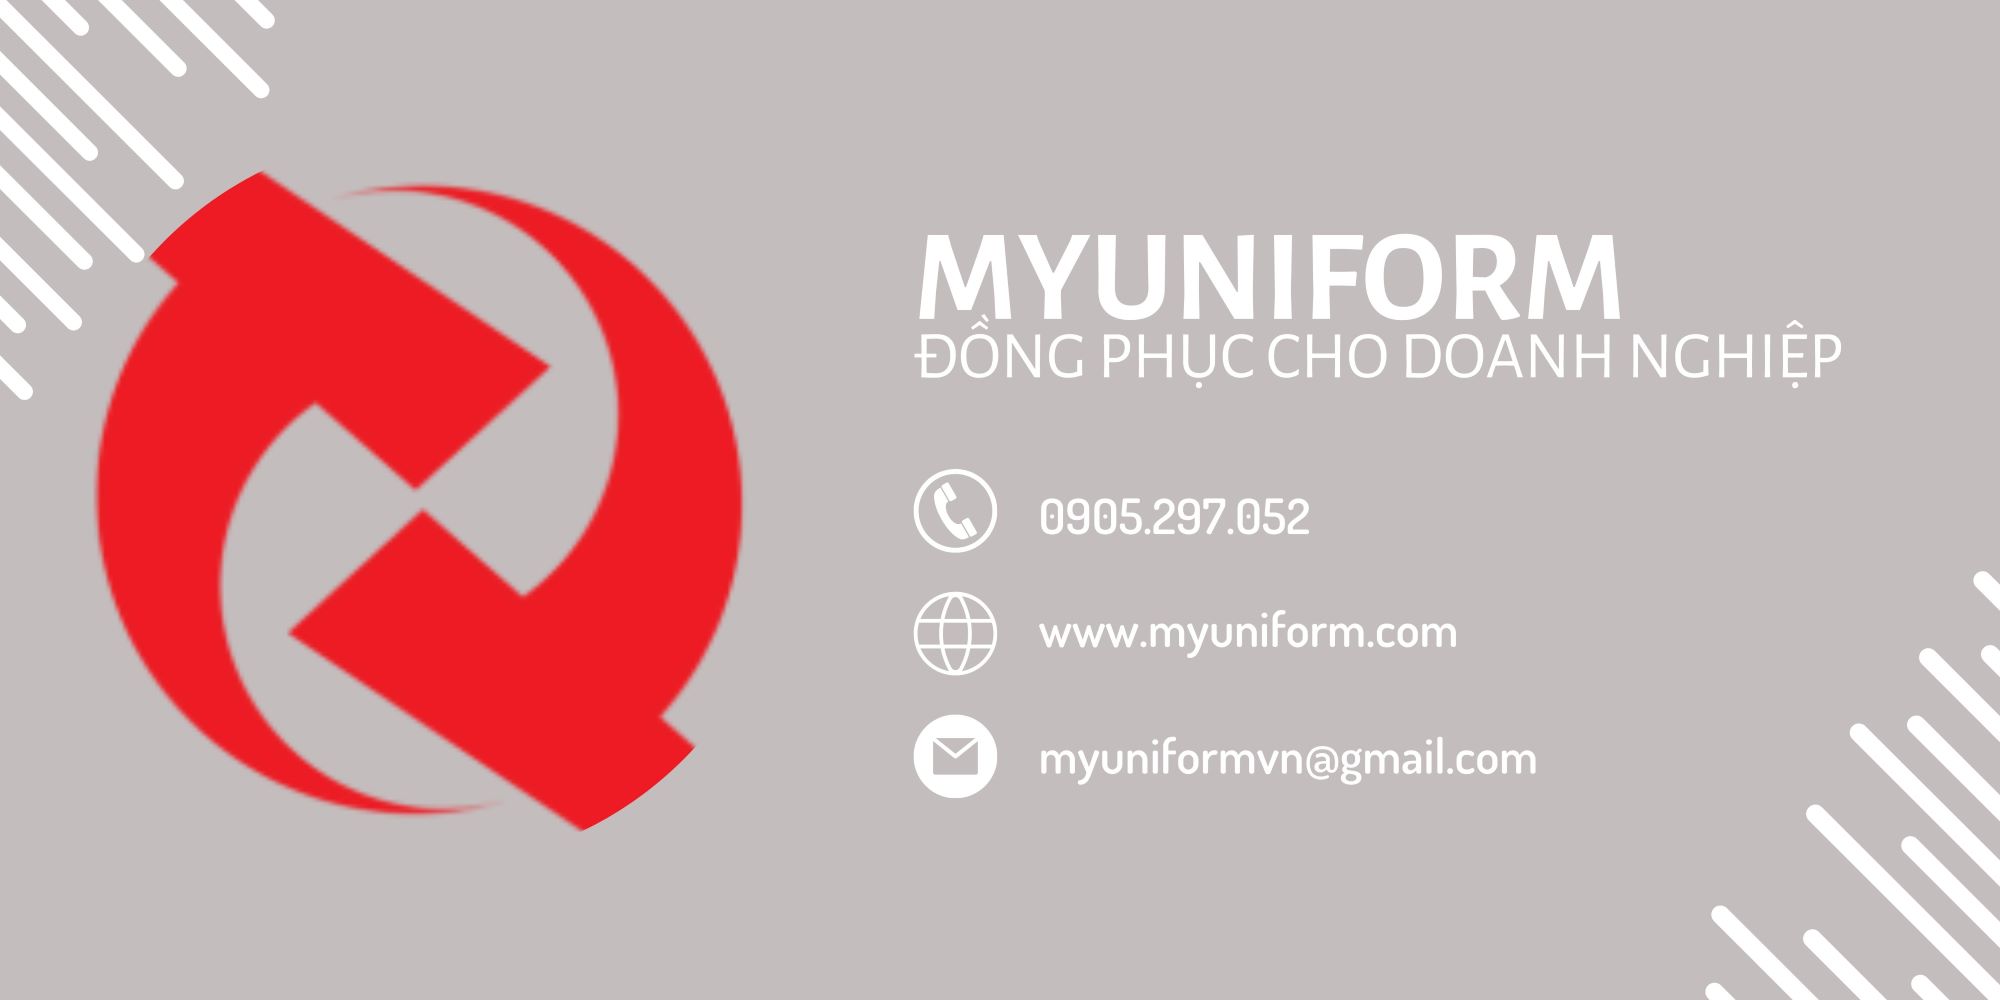 ao-thun-cong-so-myuniform-6